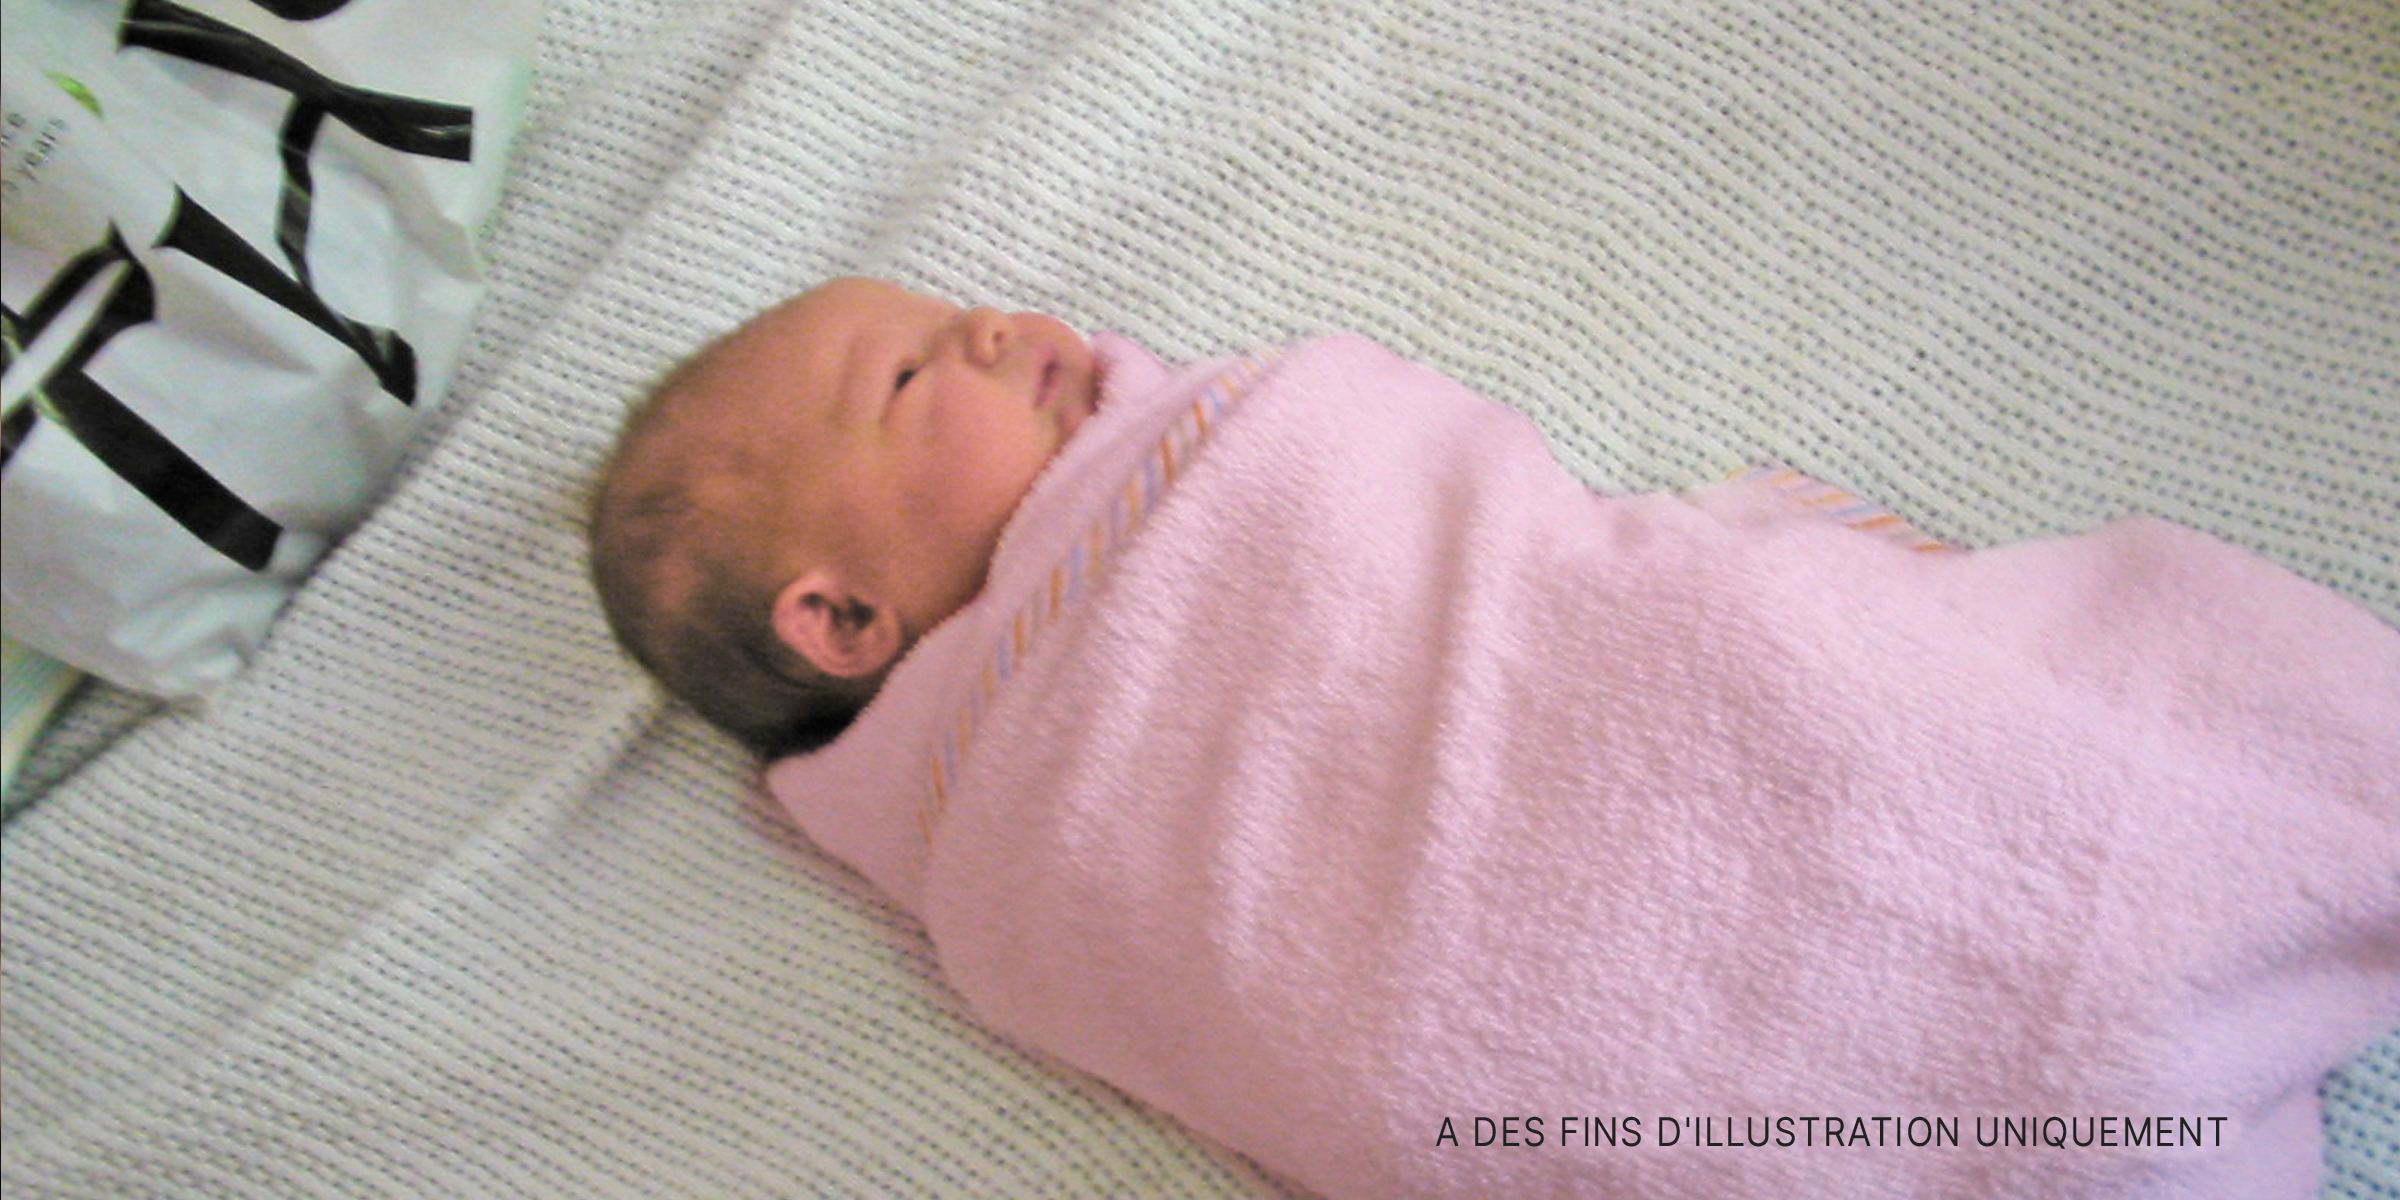 Un bébé enveloppé dans une serviette. | Source : Flickr / shegingerly (CC BY-SA 2.0)